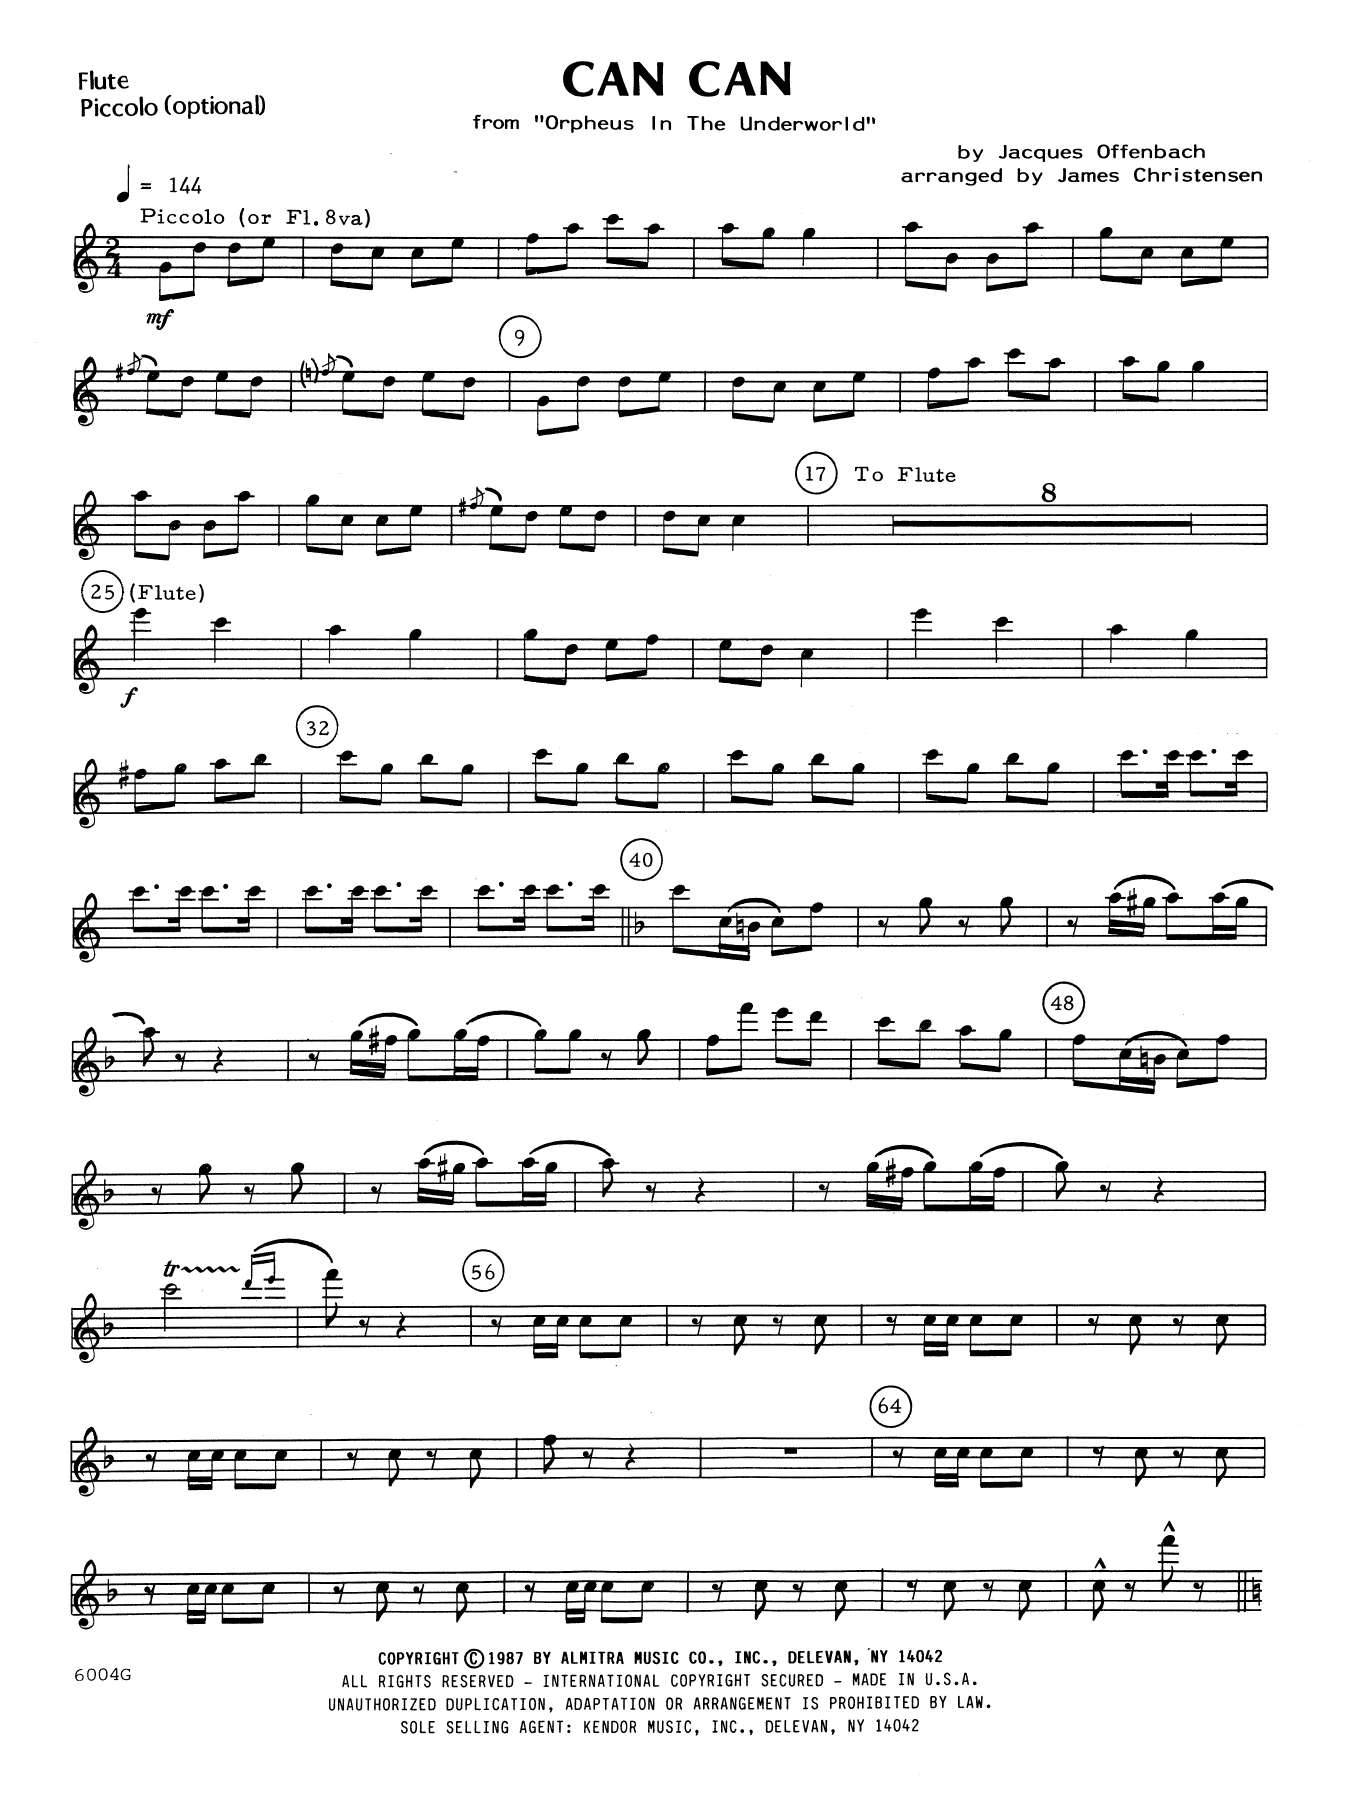 Download James Christensen Can Can - Flute Sheet Music